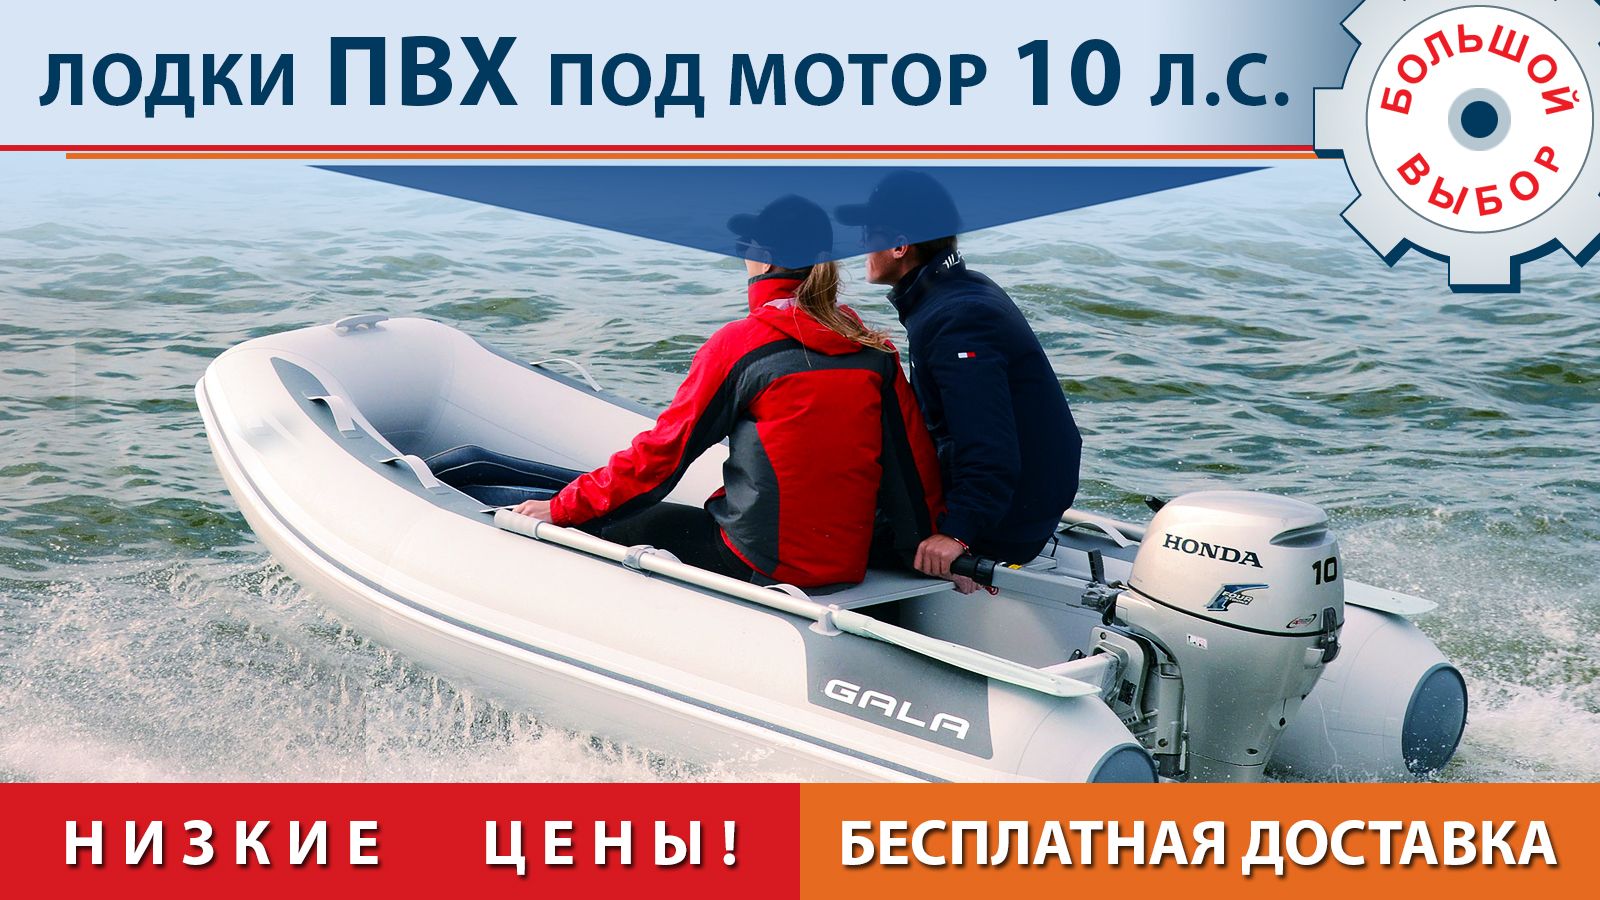 Алюминиевые лодки и катера под мотор 10 л.с.